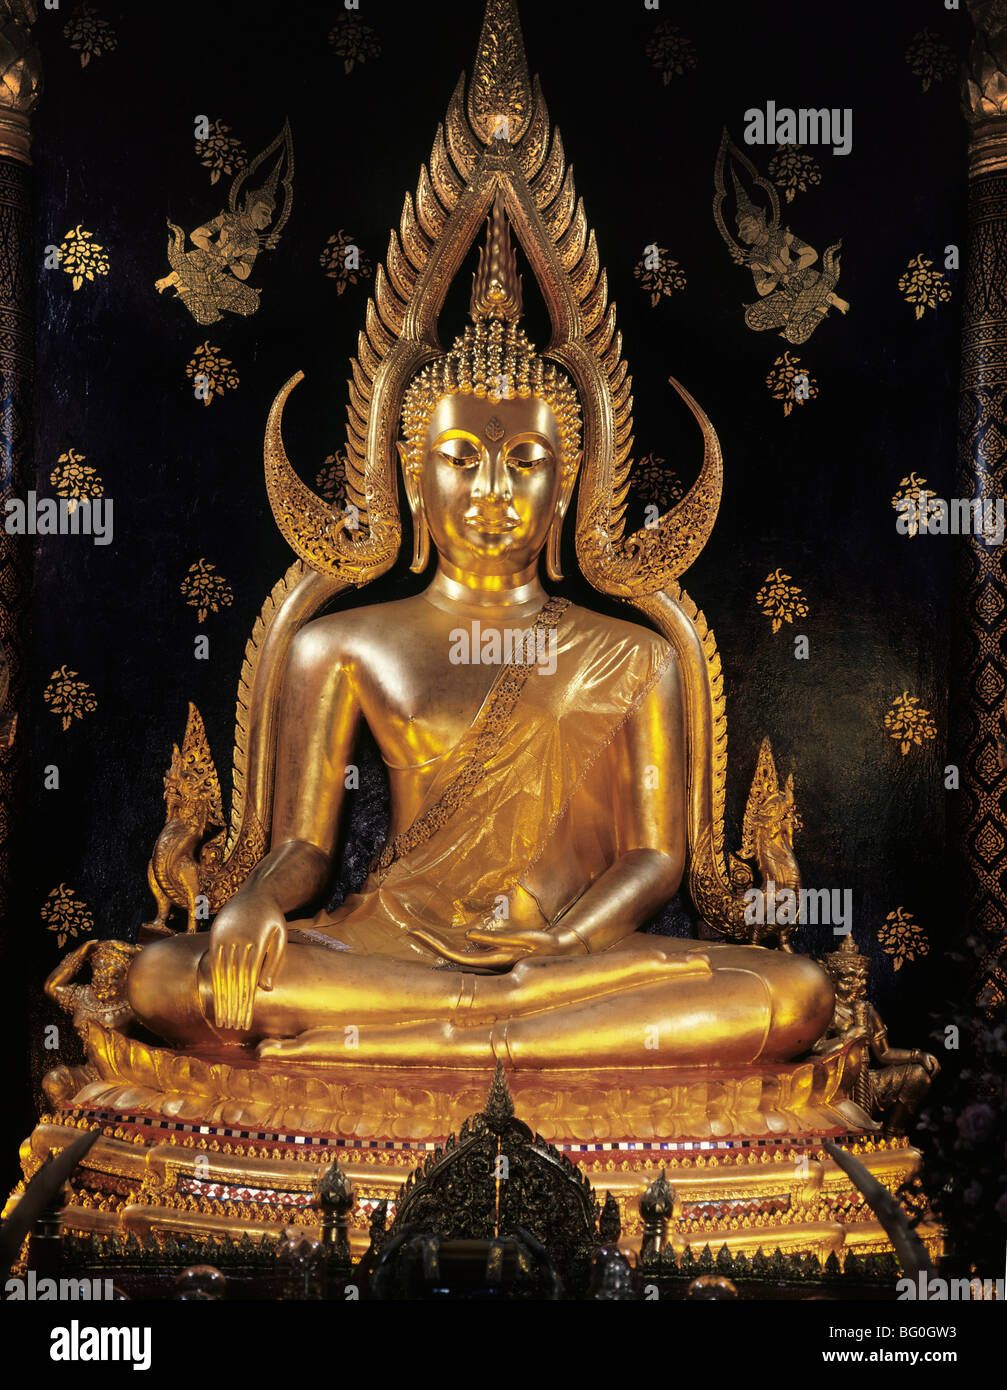 Der Phra Buddha Jinnarat Pitsanulok, das am meisten verehrte Bild von Thailand, Pitsanulok, Thailand Stockfoto